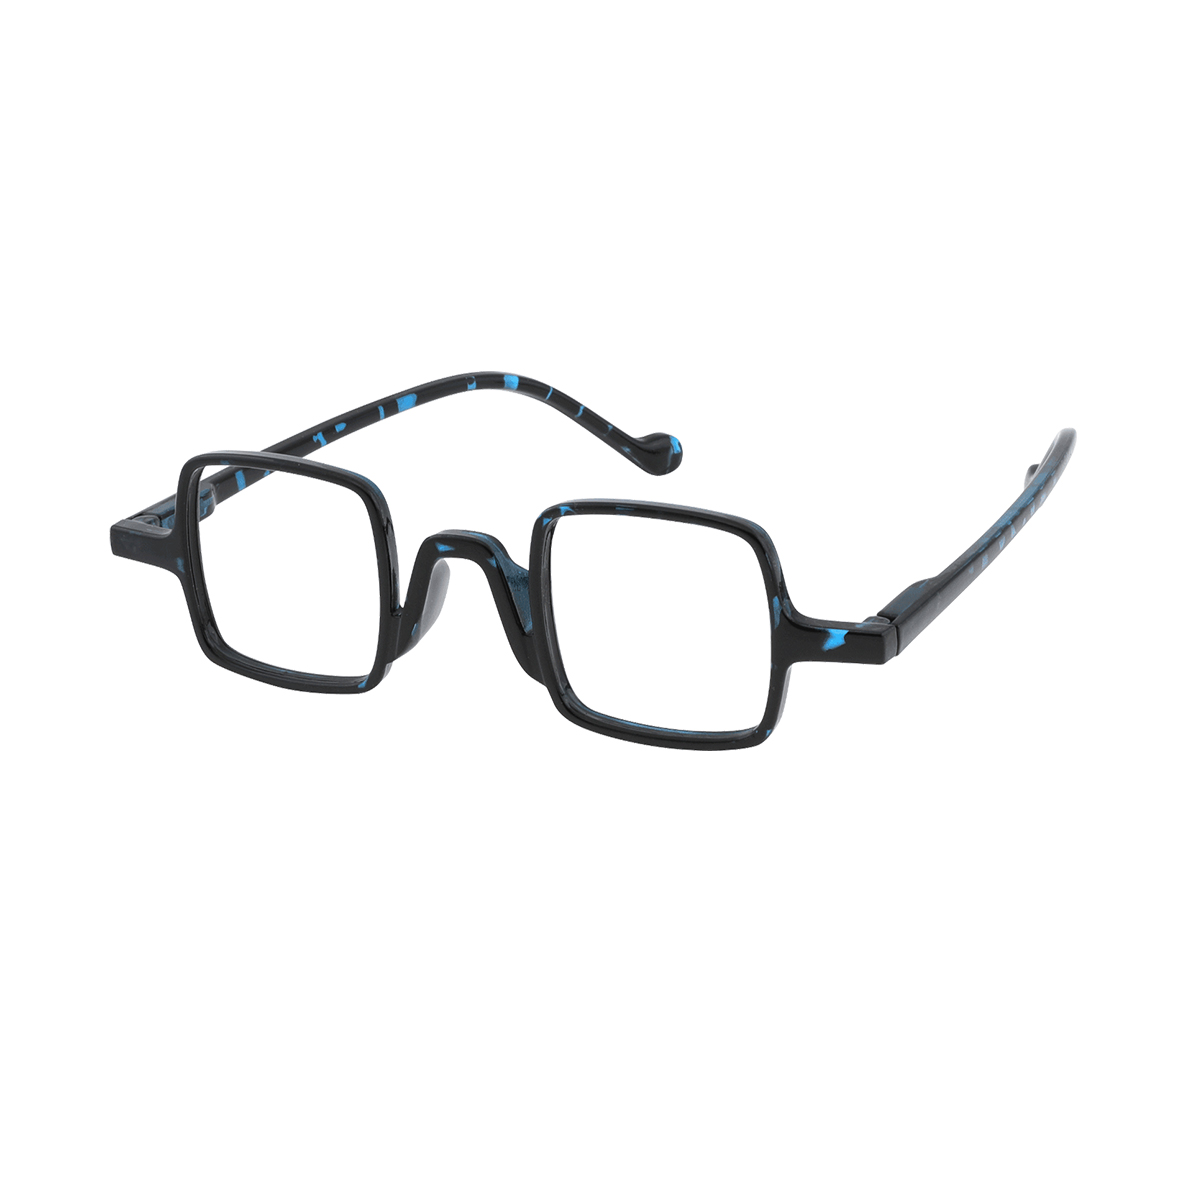 Amphlet - Square Blue-Demi Reading Glasses for Men & Women